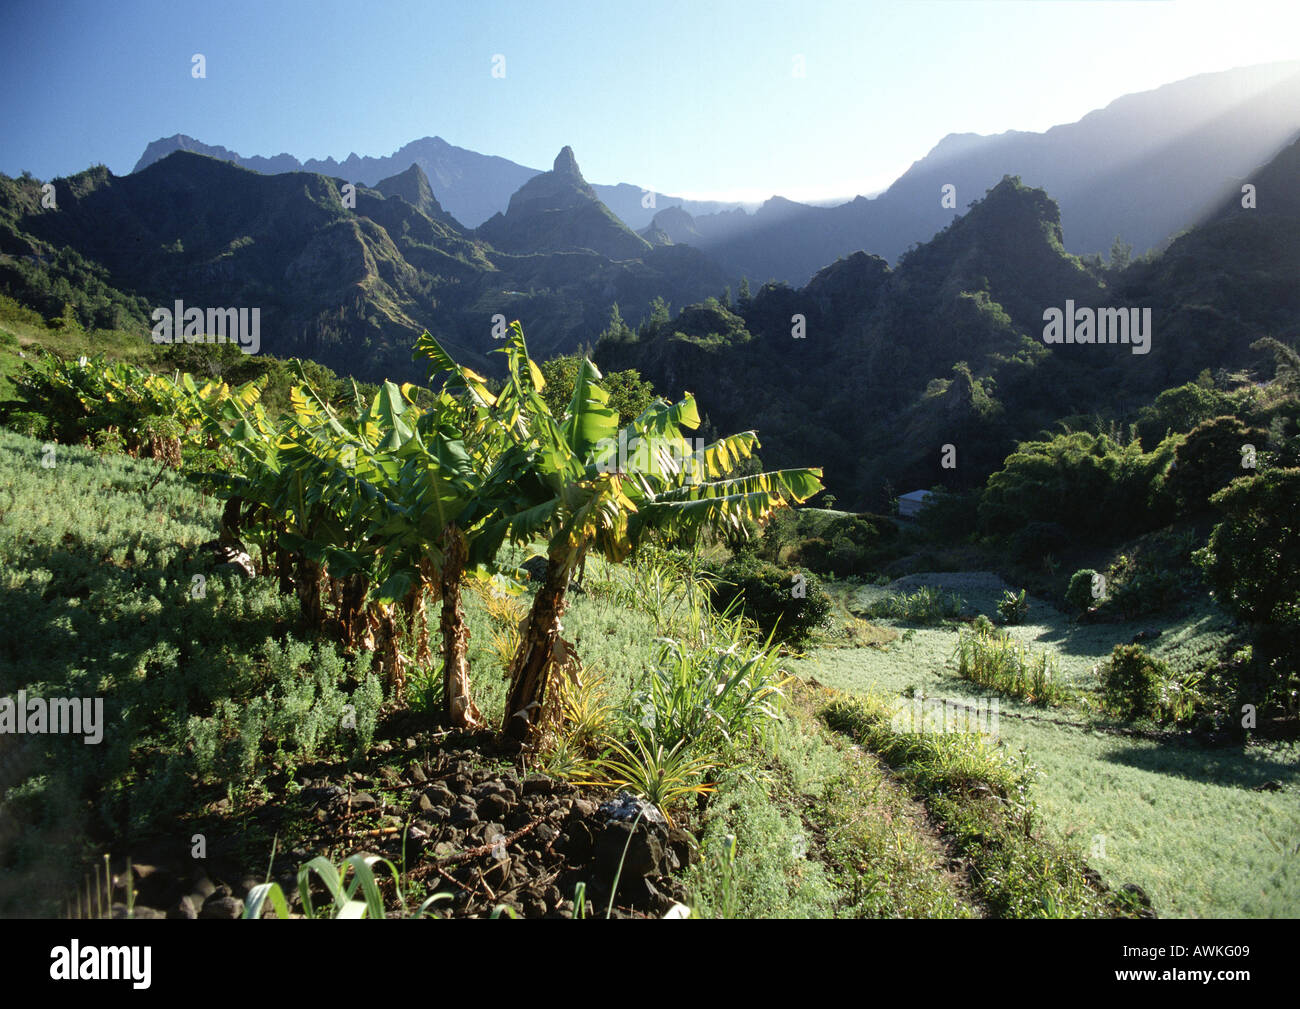 Soleil, palmiers dans un paysage montagneux, Réunion (île française dans l'Océan Indien) Banque D'Images